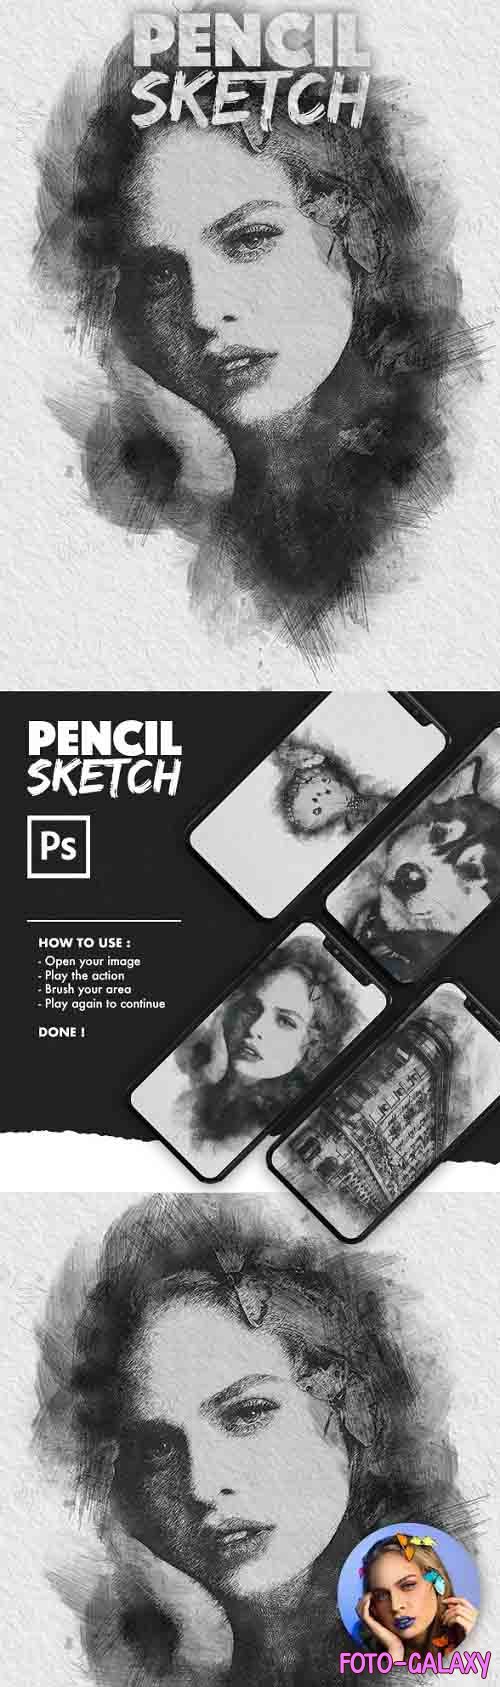 Pencil Sketch Photoshop Action - 30142592